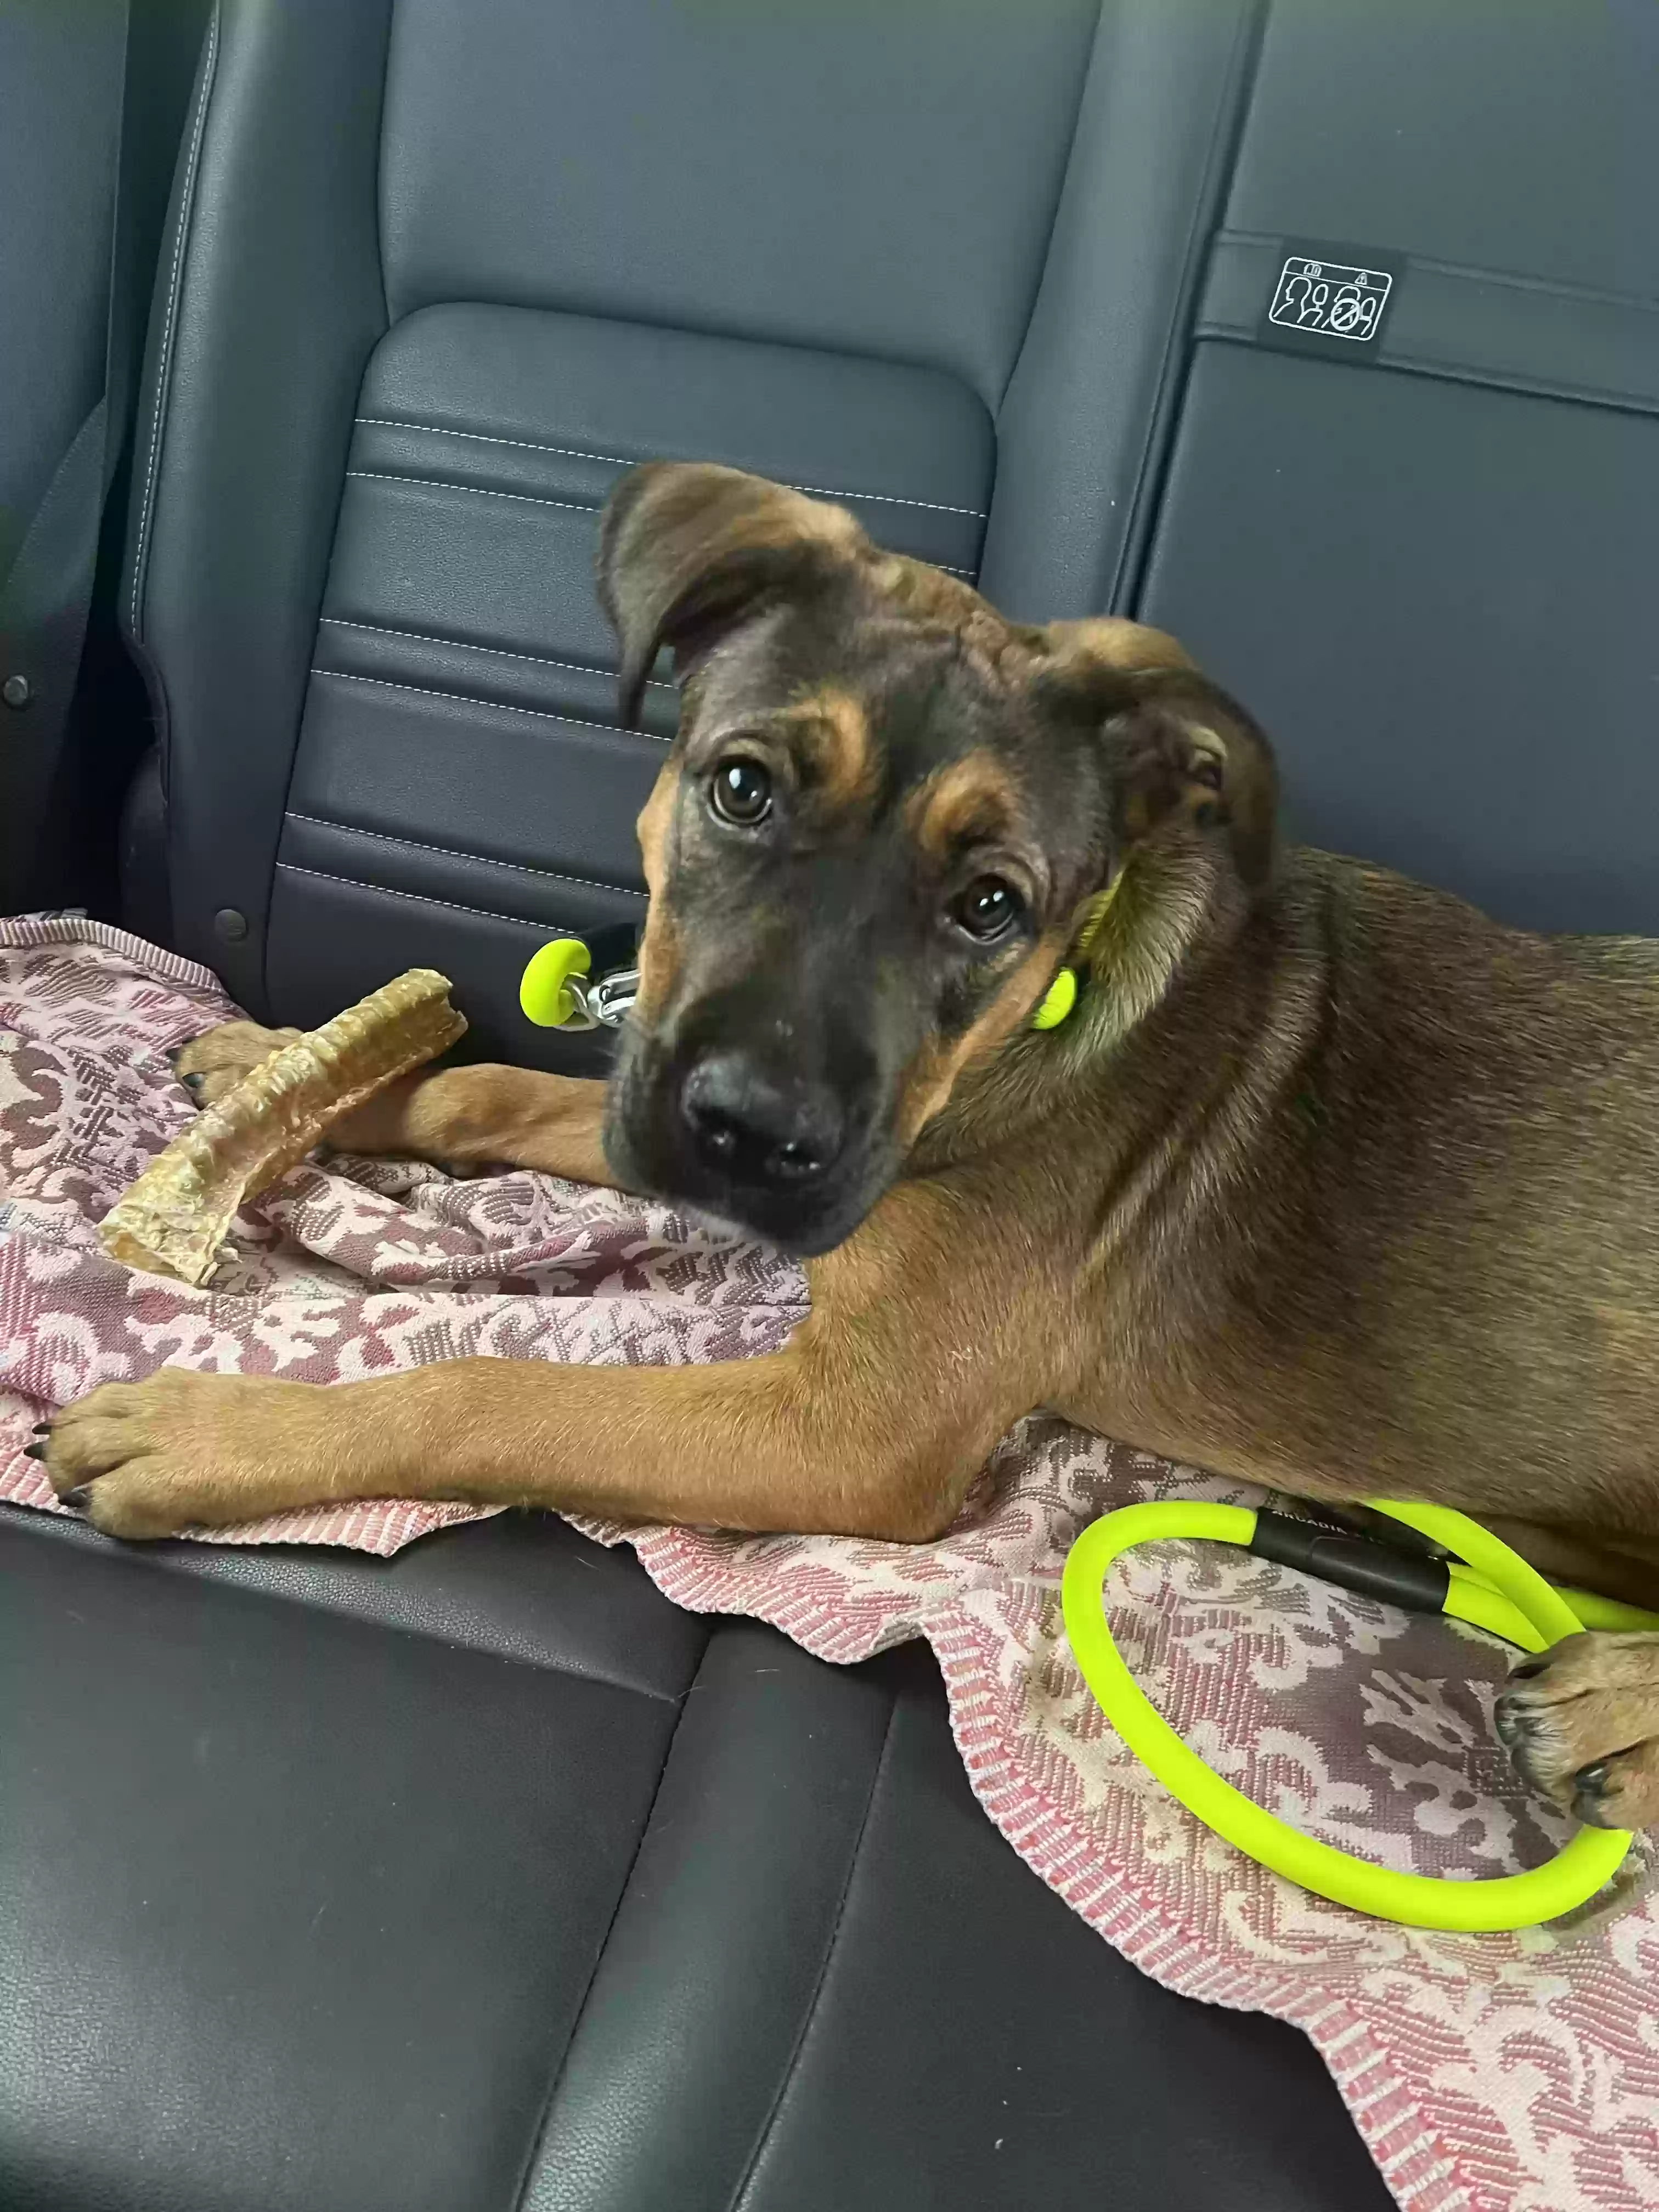 adoptable Dog in Atlanta,GA named Xena